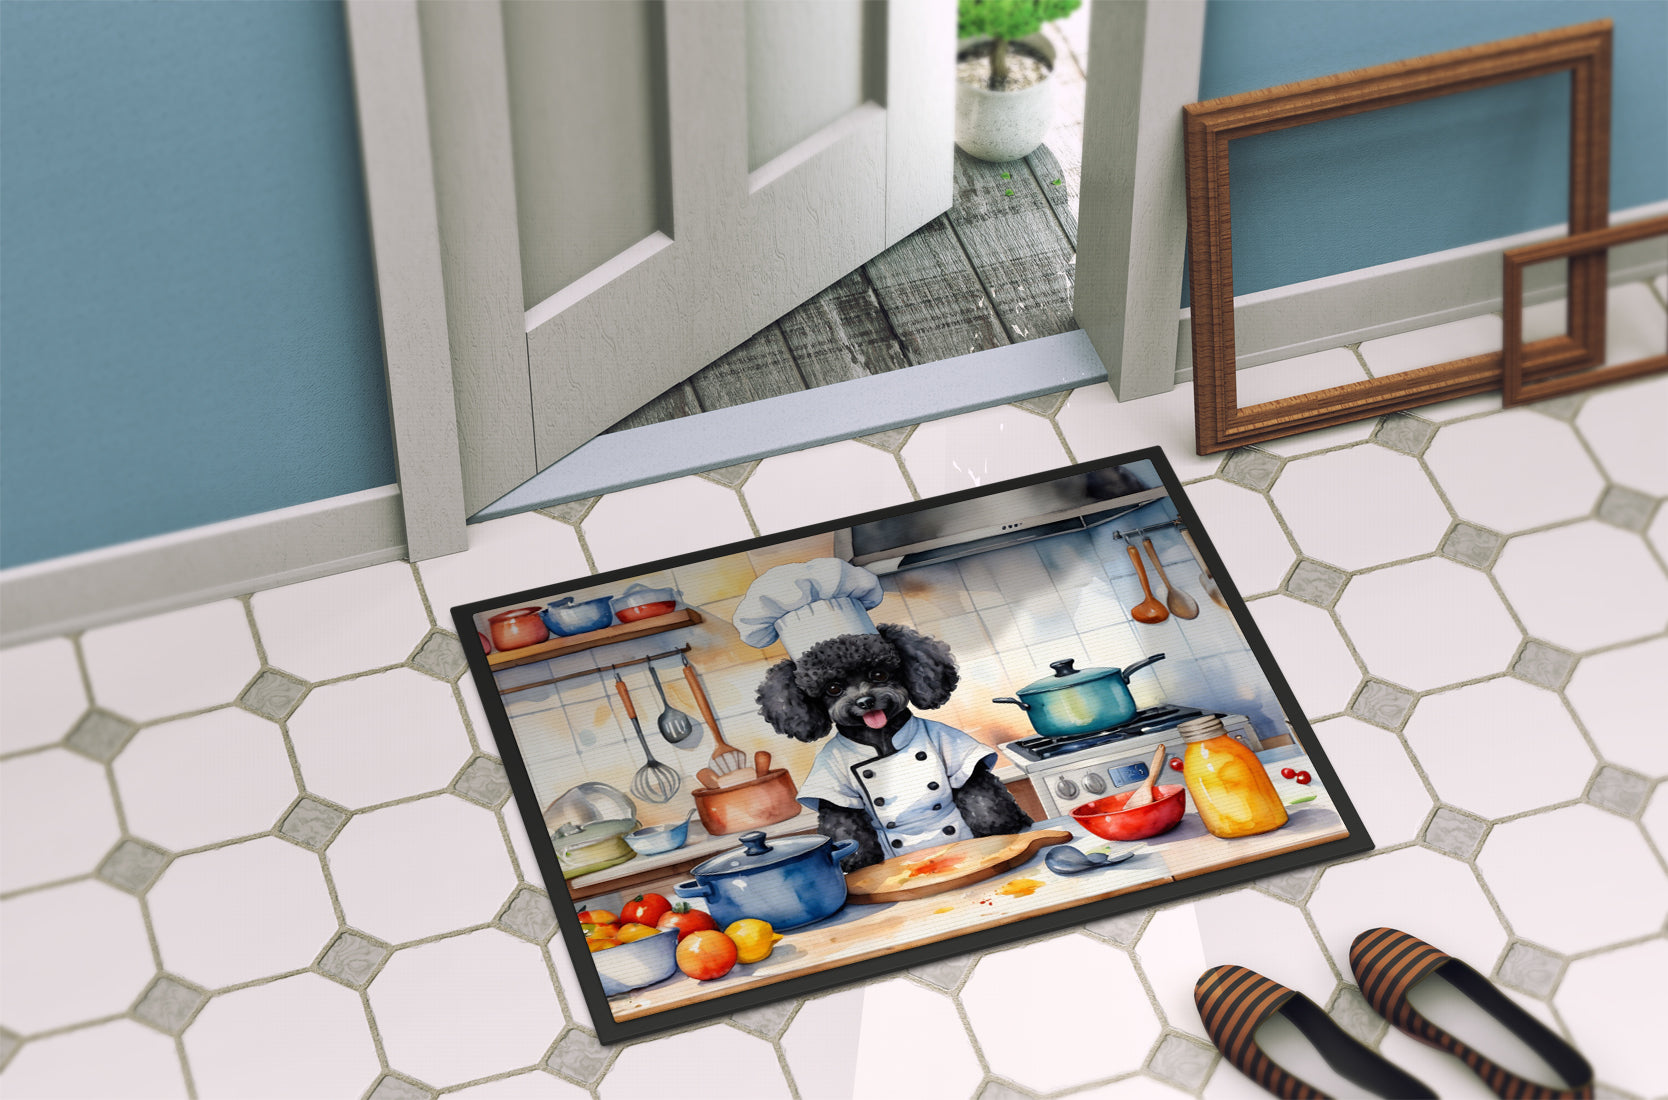 Black Poodle The Chef Doormat